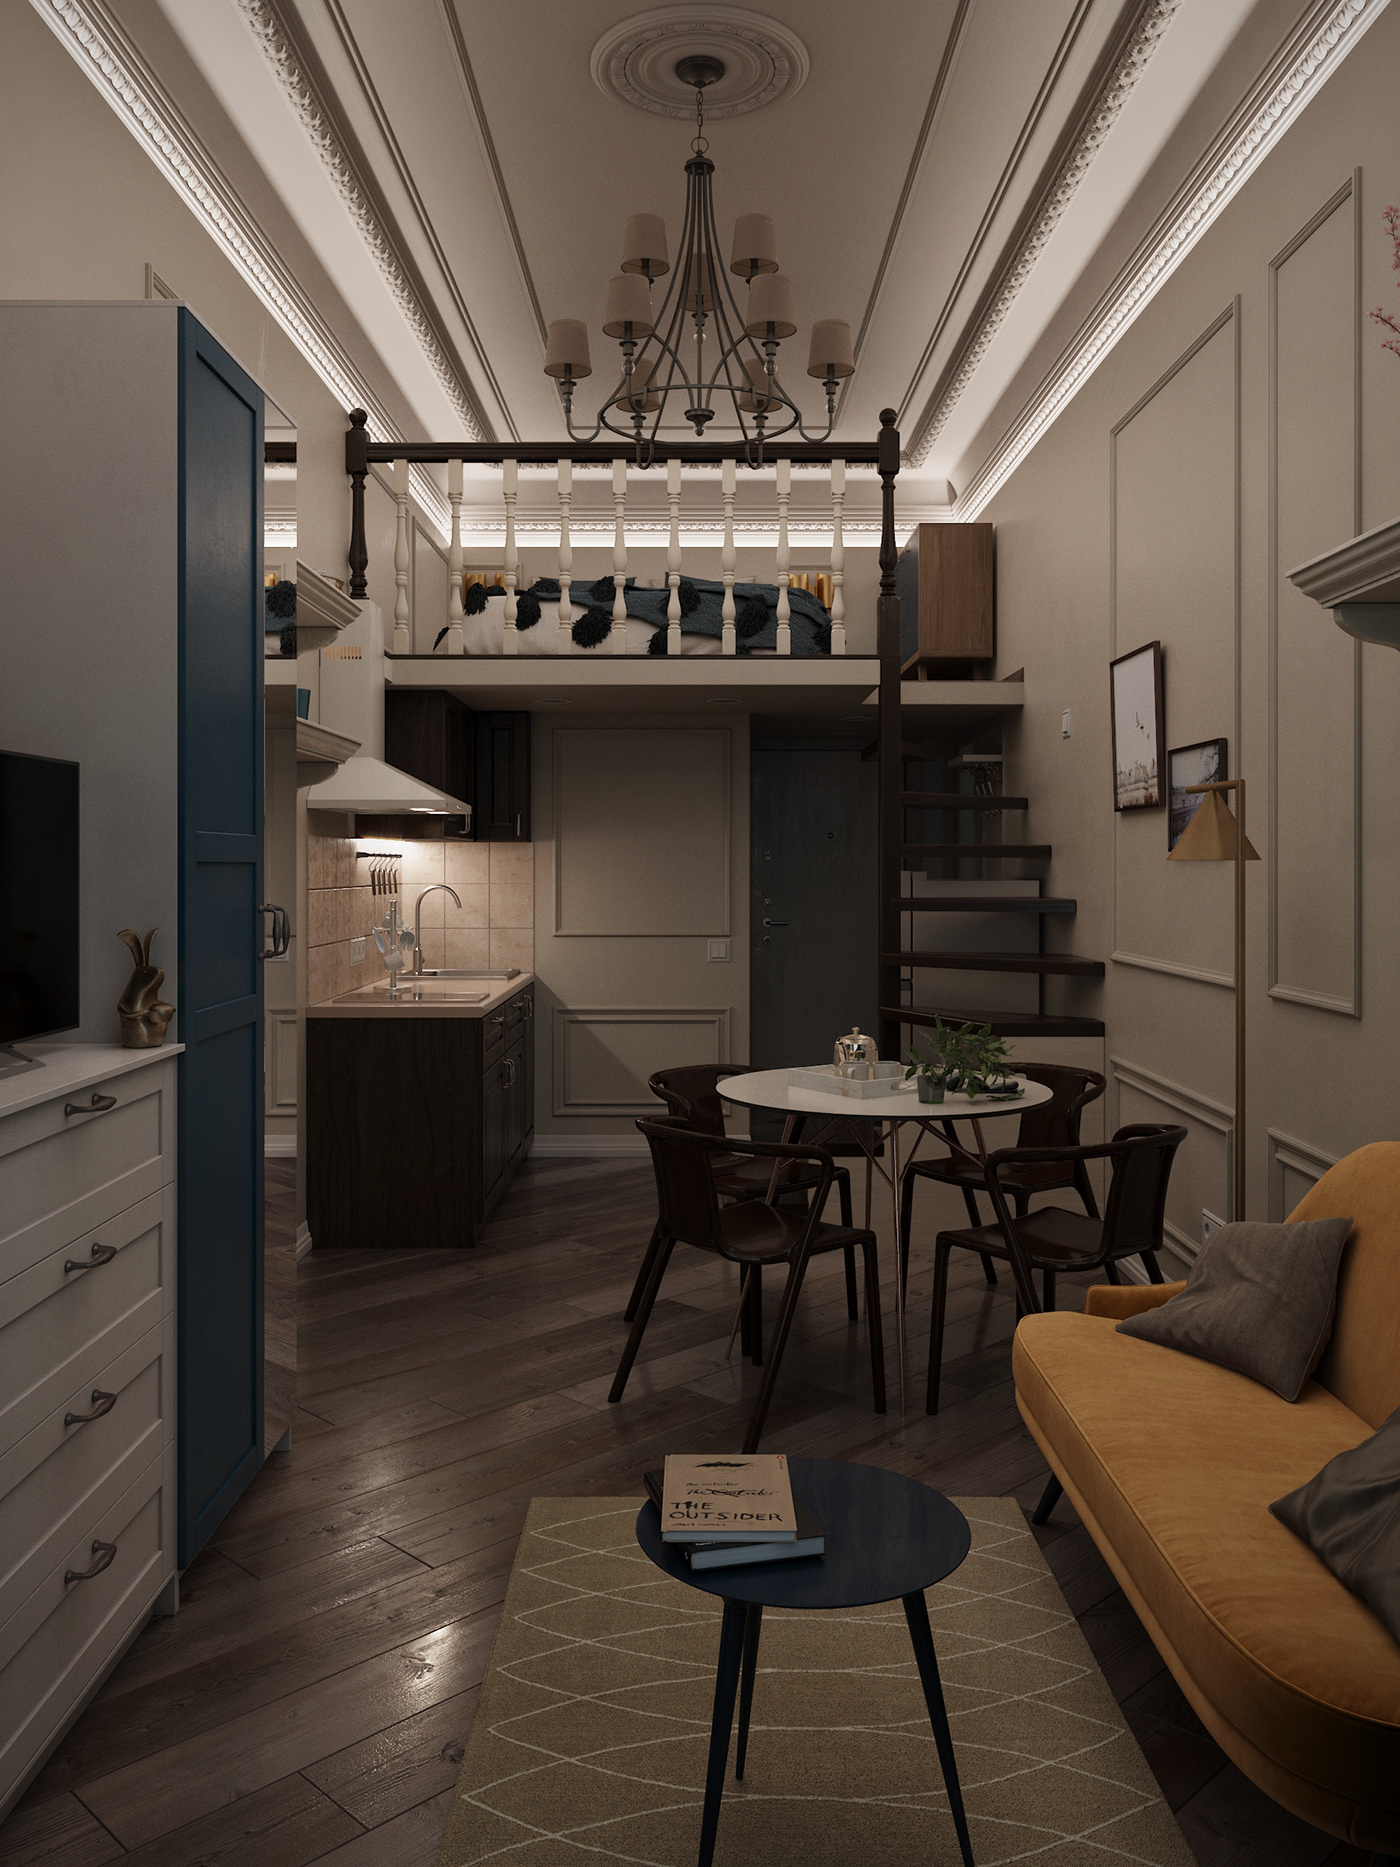 3D 3ds max architecture corona interior design  Render studio visualization